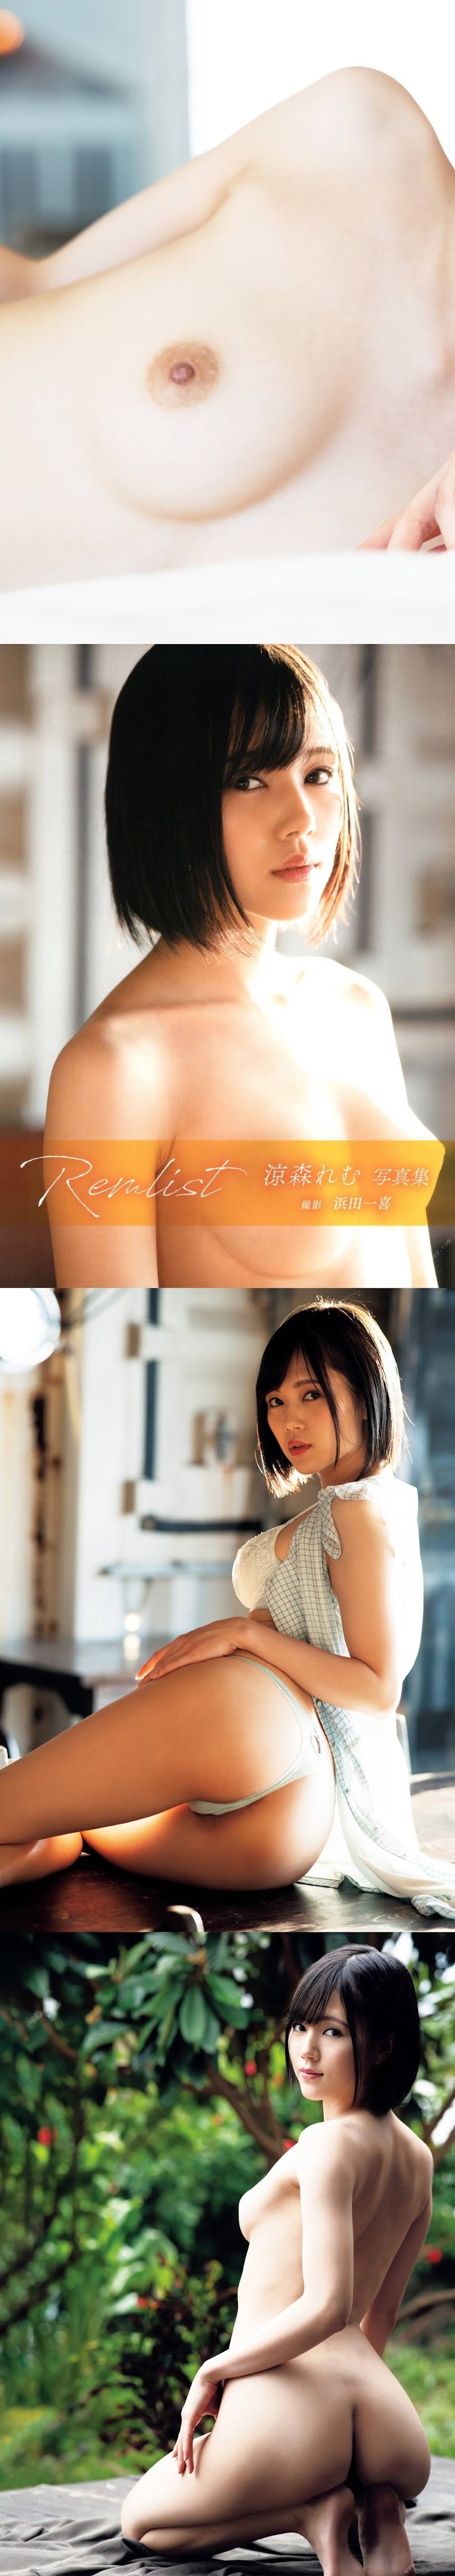 [Photobook] Remu Suzumori 涼森れむ - Remlist (2020-01-21)   P215302 - idols